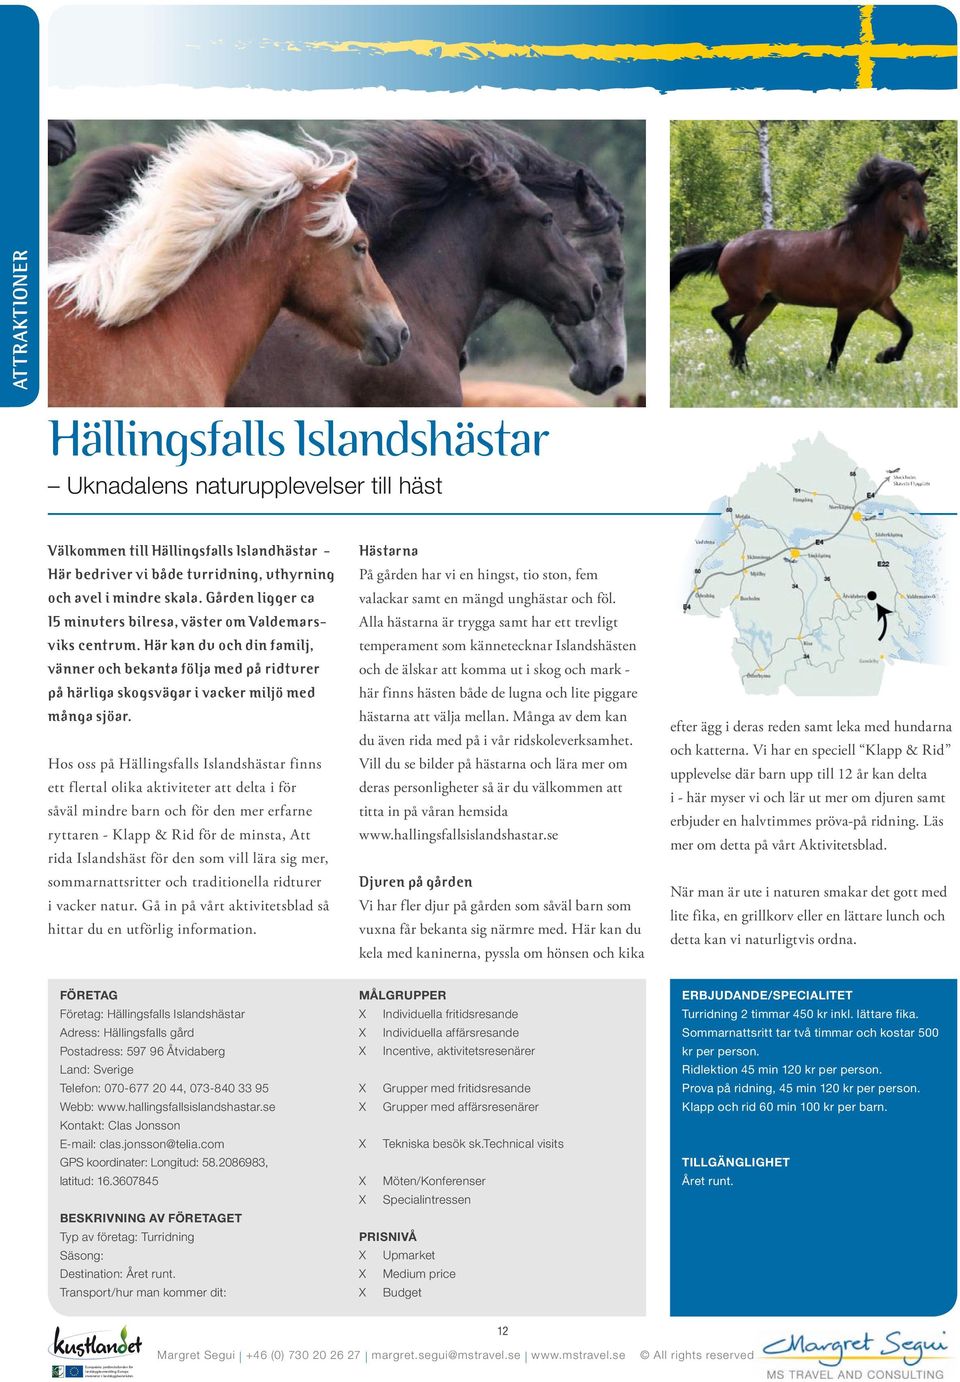 Hos oss på Hällingsfalls Islandshästar finns ett flertal olika aktiviteter att delta i för såväl mindre barn och för den mer erfarne ryttaren - Klapp & Rid för de minsta, Att rida Islandshäst för den